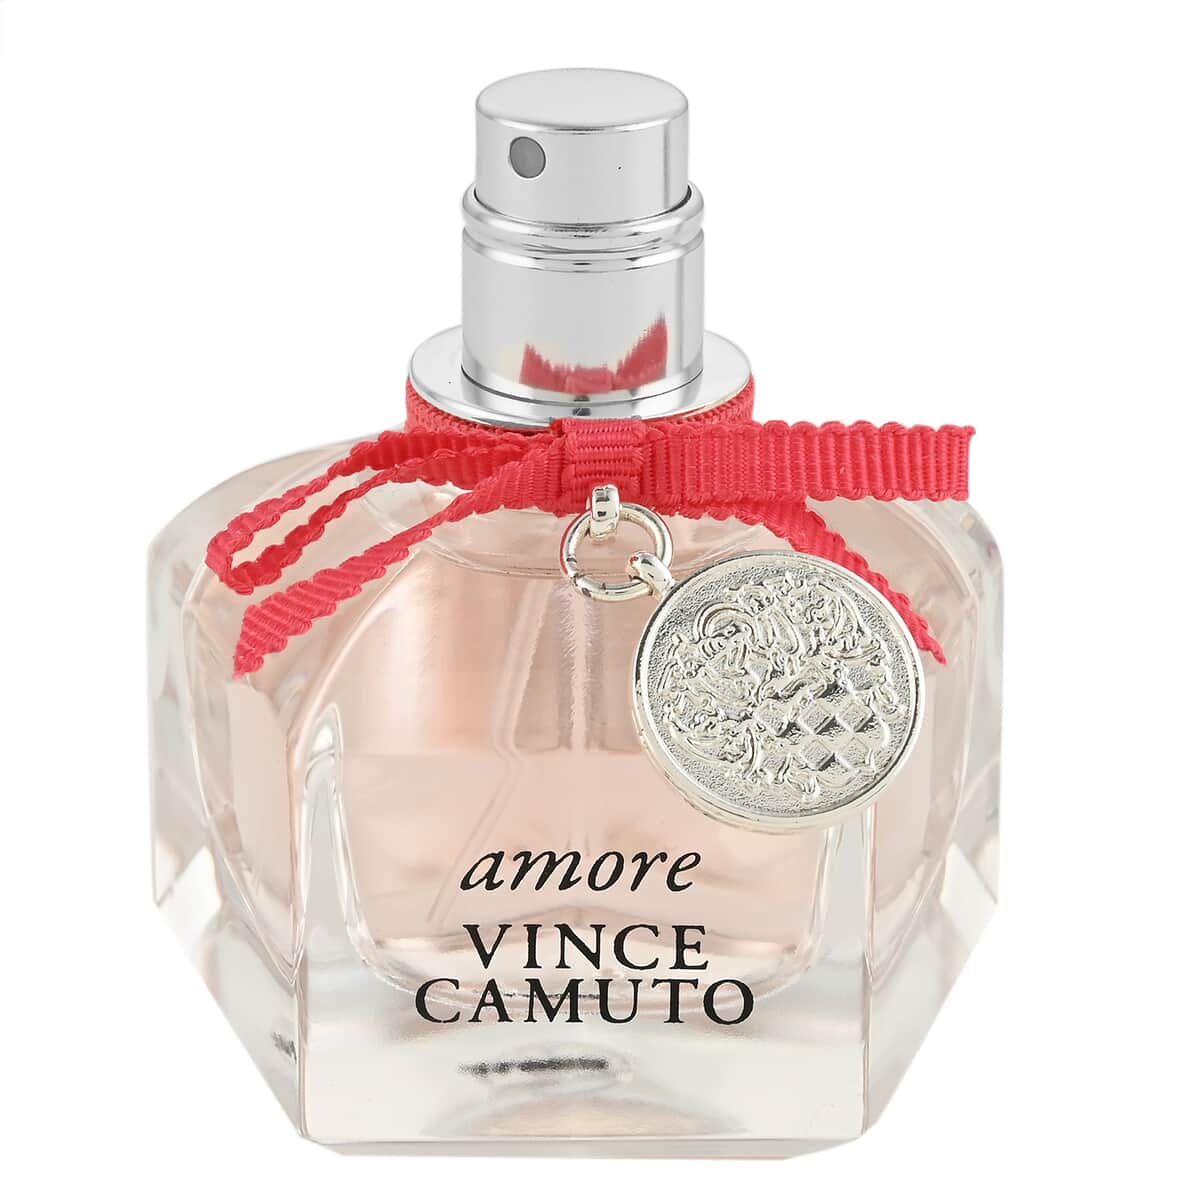 Amore Gift Set by Vince Camuto for Women Eau de Parfum 3 Count